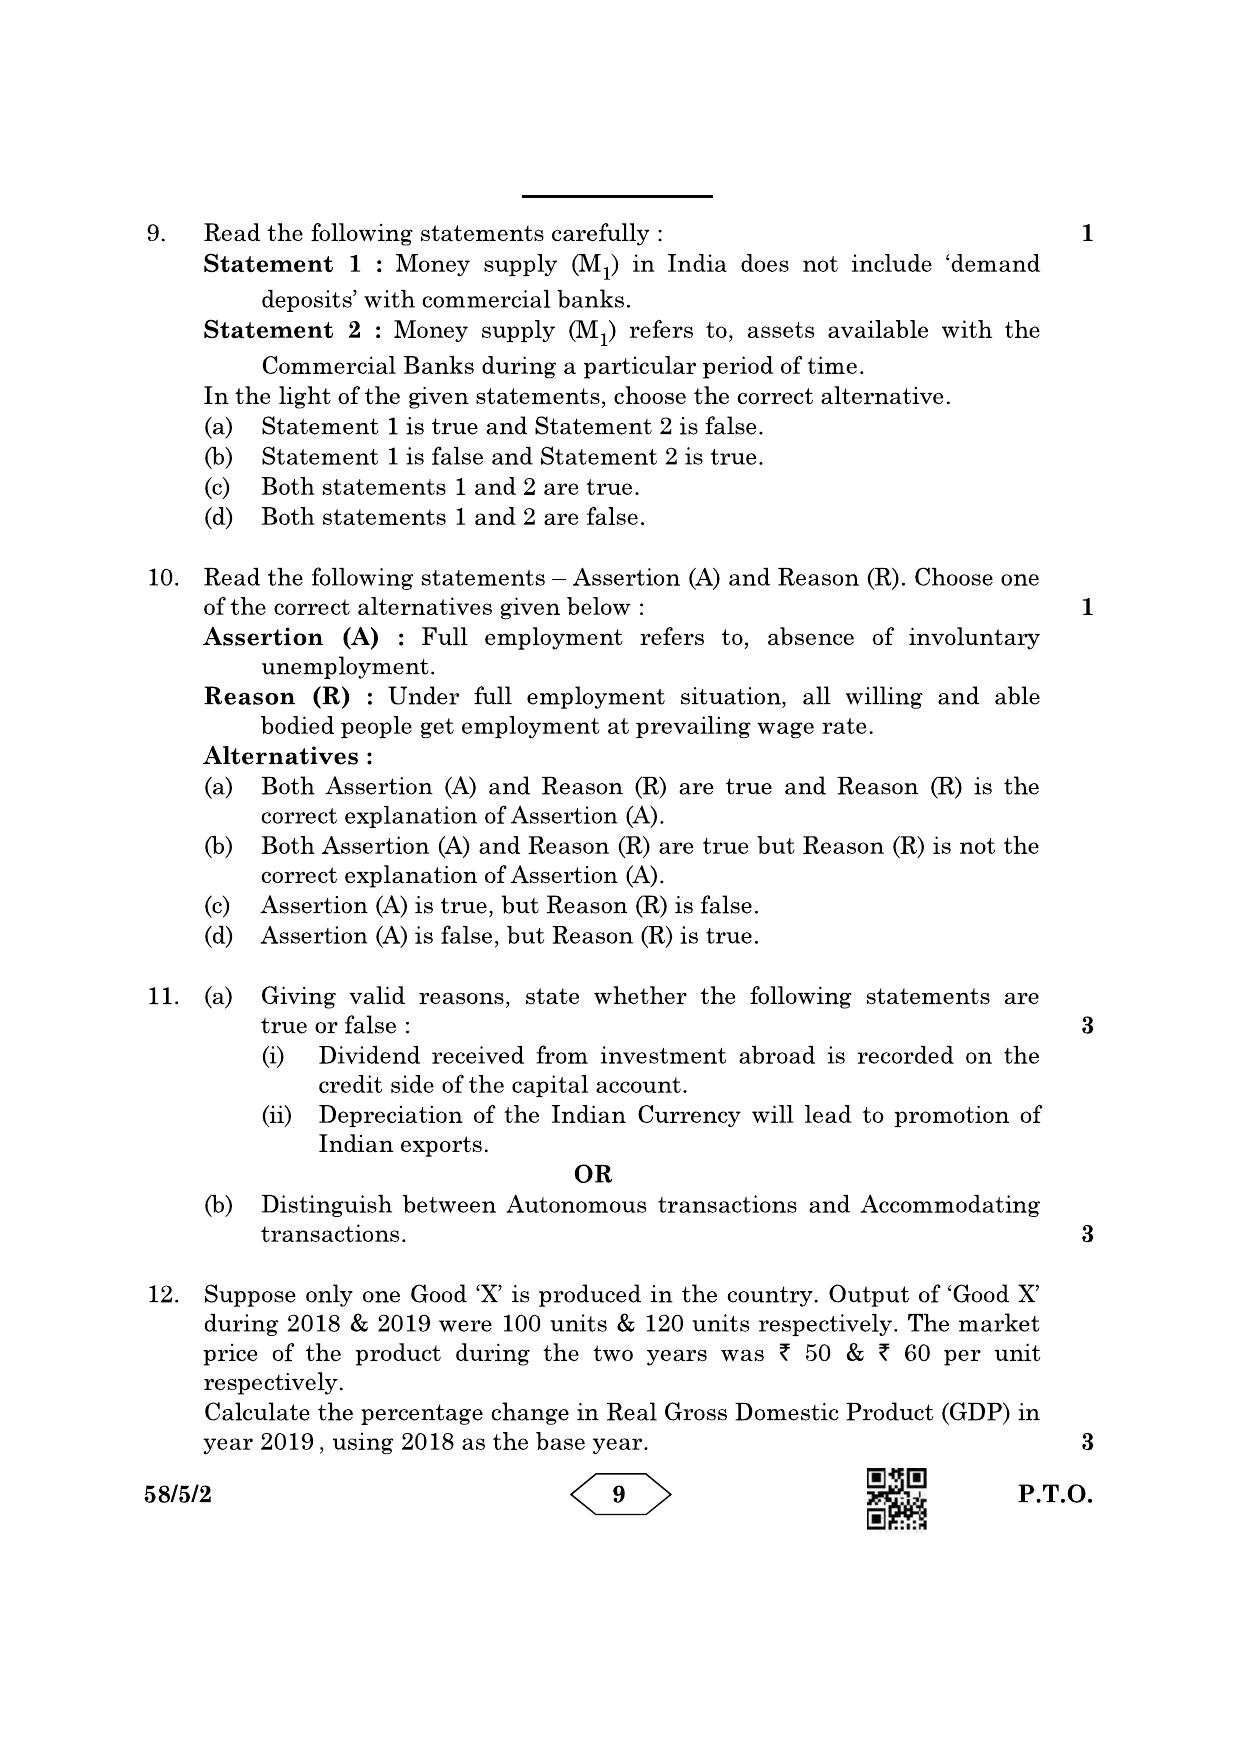 CBSE Class 12 58-5-2 Economics 2023 Question Paper - Page 9